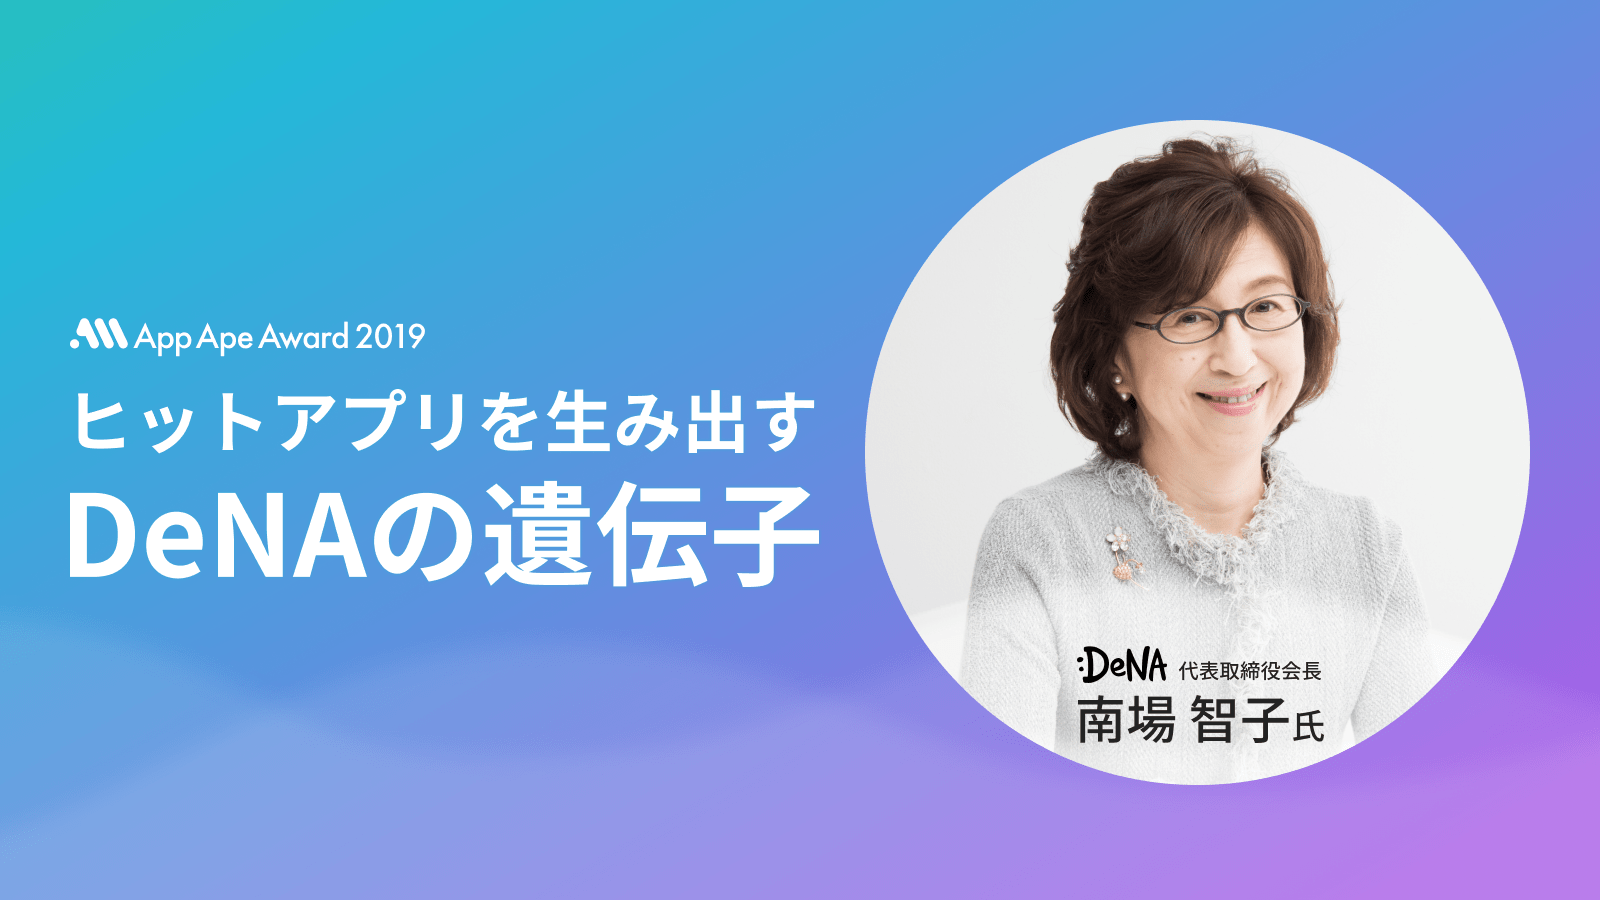 App Ape Award 2019の基調講演に、DeNA会長 南場智子氏の登壇が決定